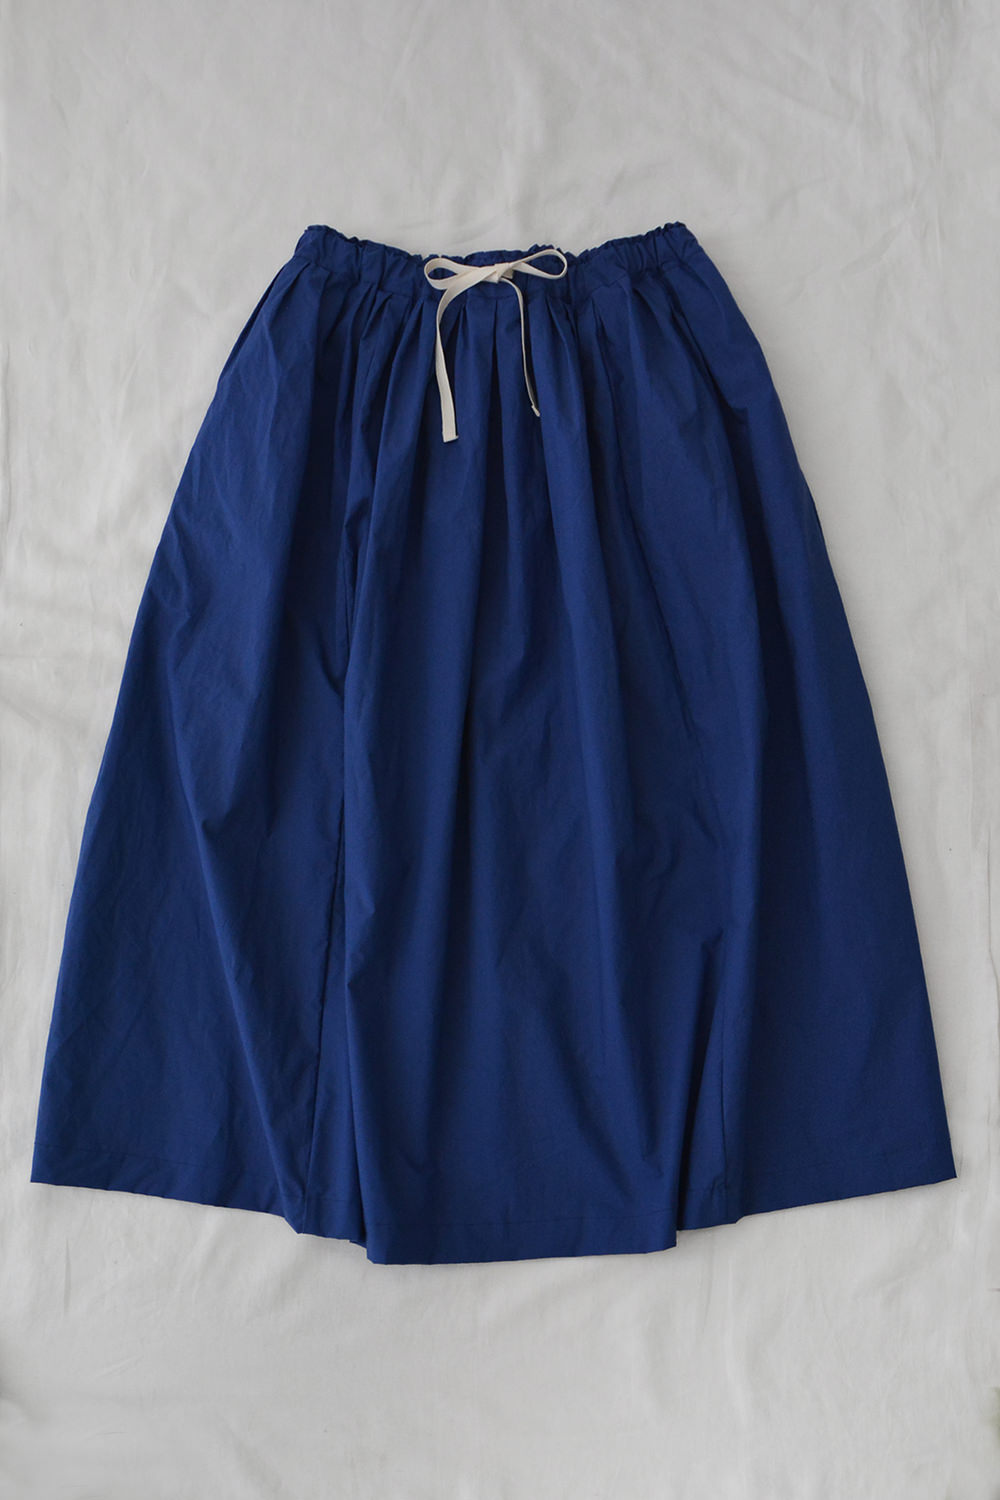 Cotton Skirt Lena Long Length Blue Top Picture